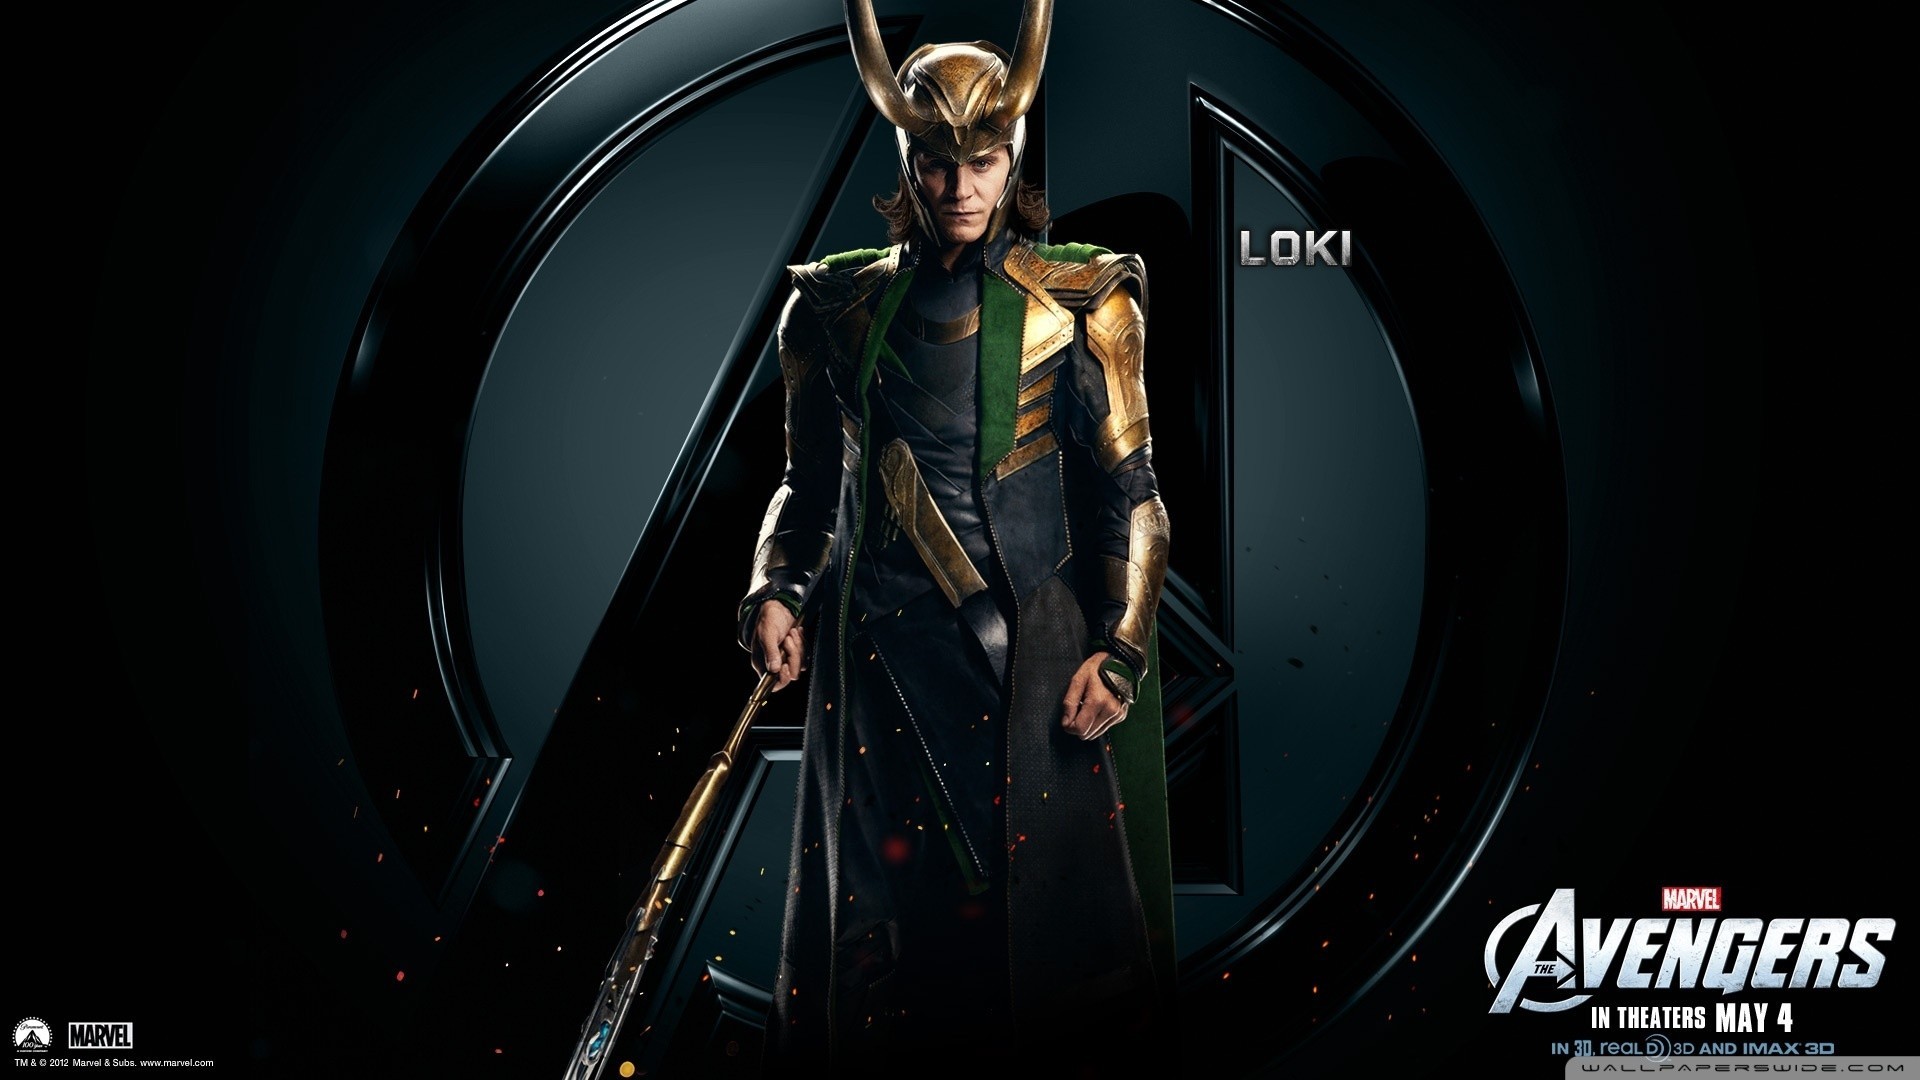 The Avengers, Loki, Tom Hiddleston Wallpaper